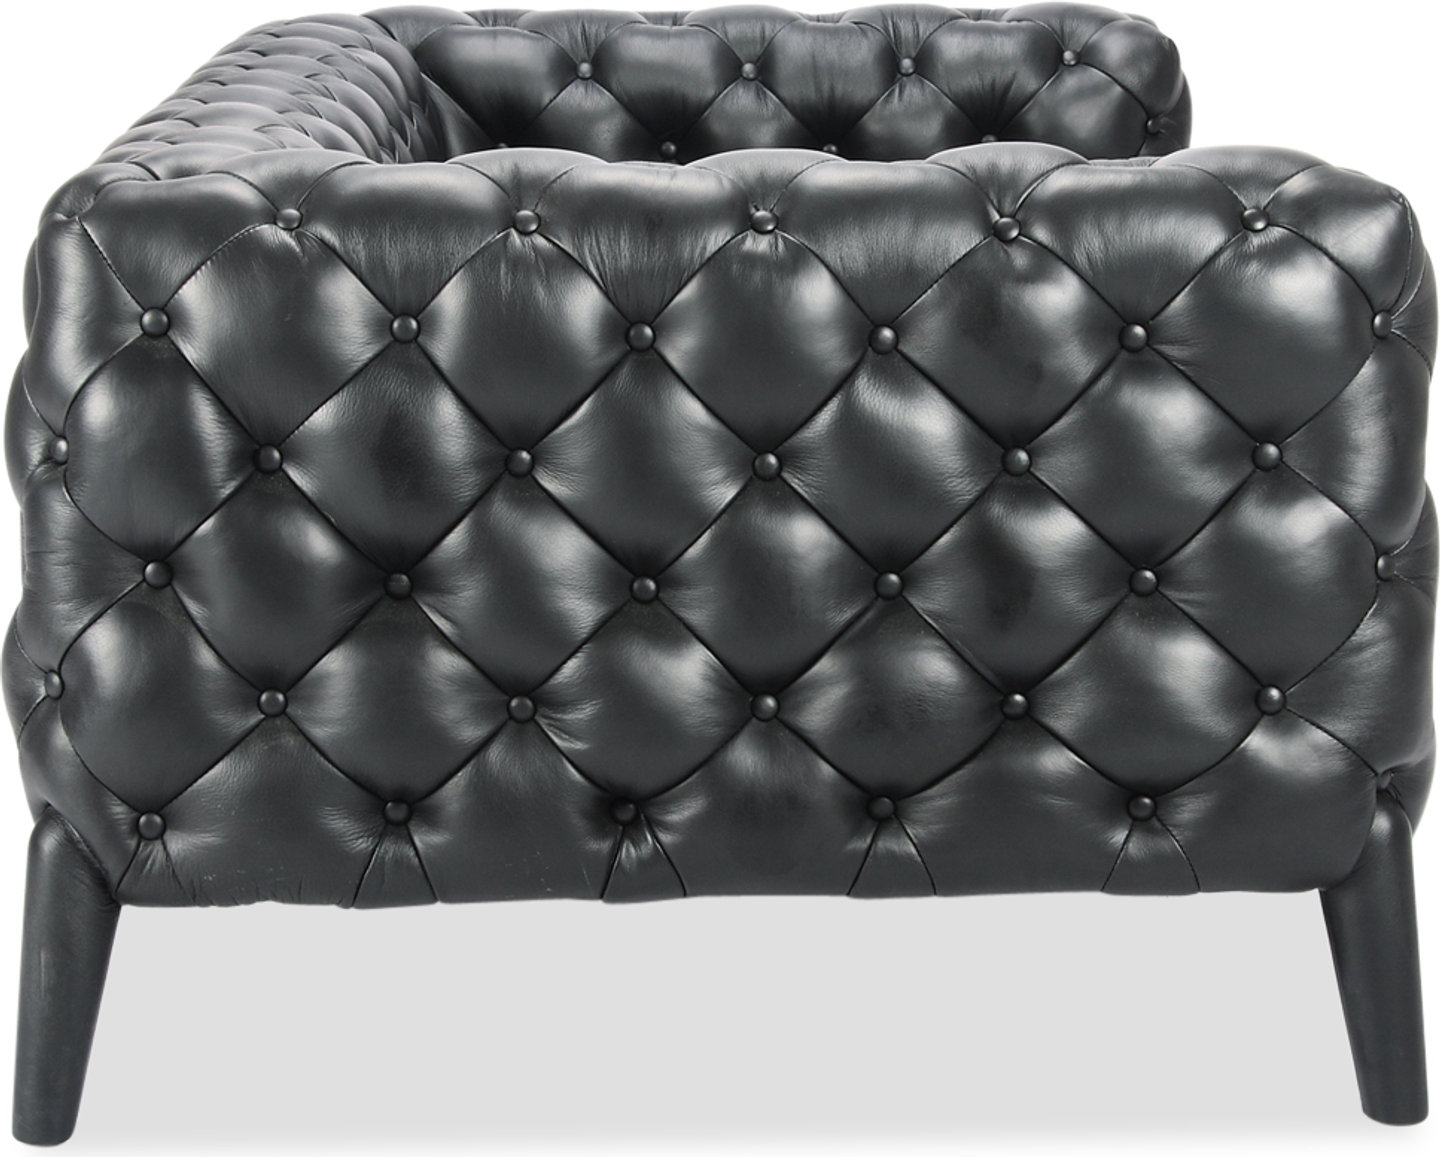 Windsor 2-sitsig soffa Premium Leather/Black  image.